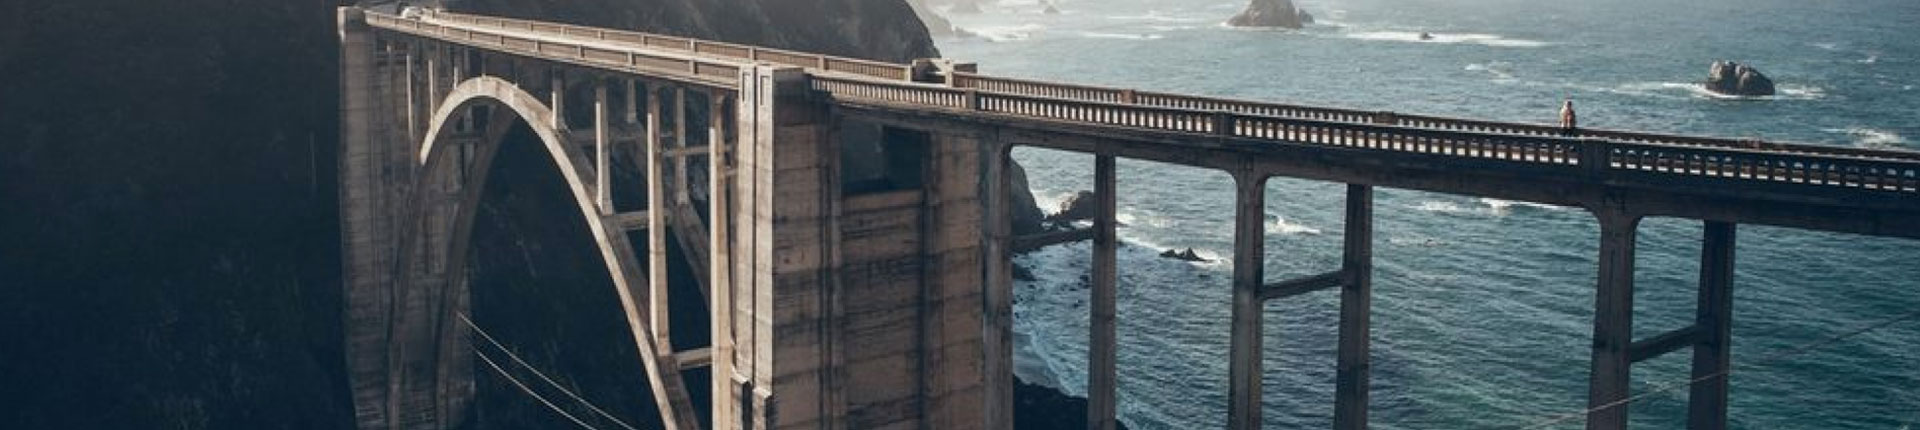 Hard money loans bridge loans - bridge by ocean